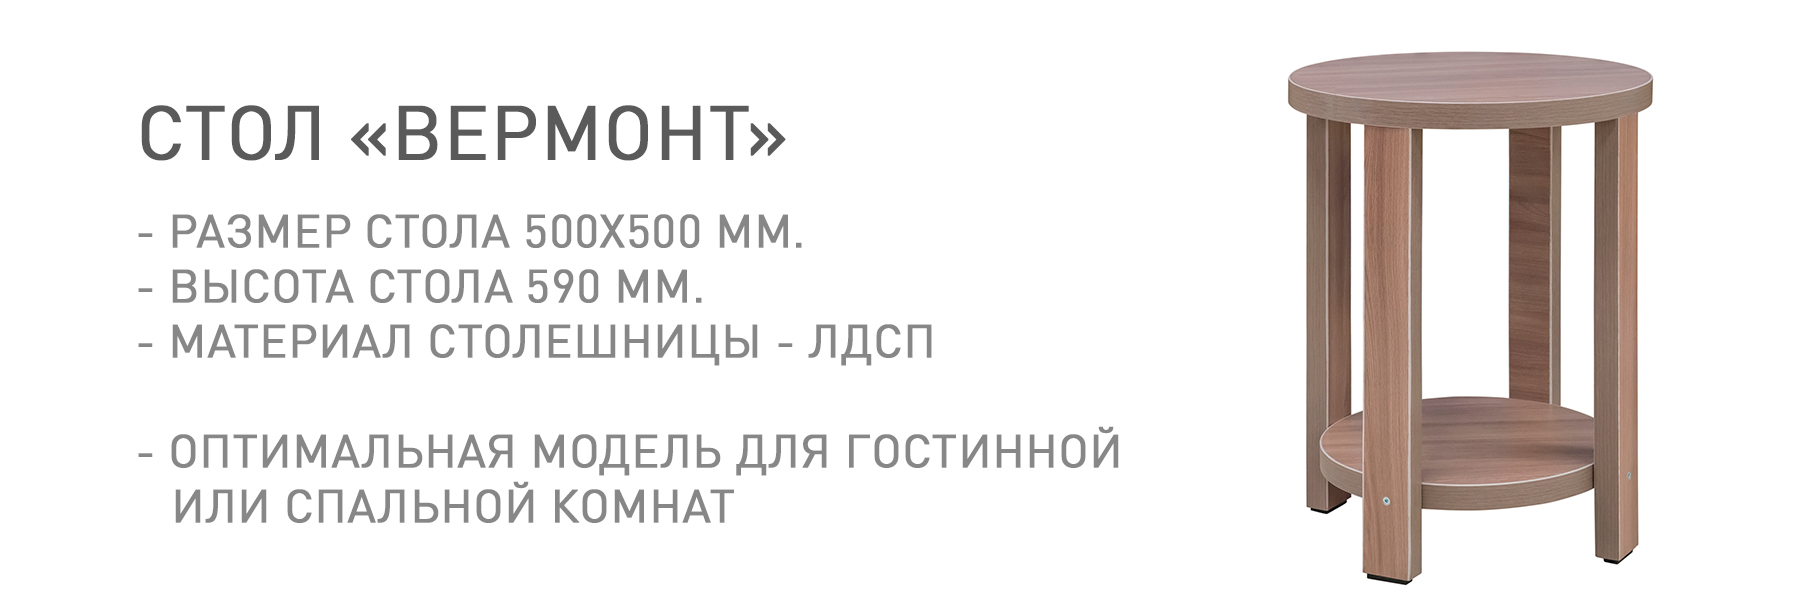 ВЕРМОНТ-МП-ТВ-044793.jpg